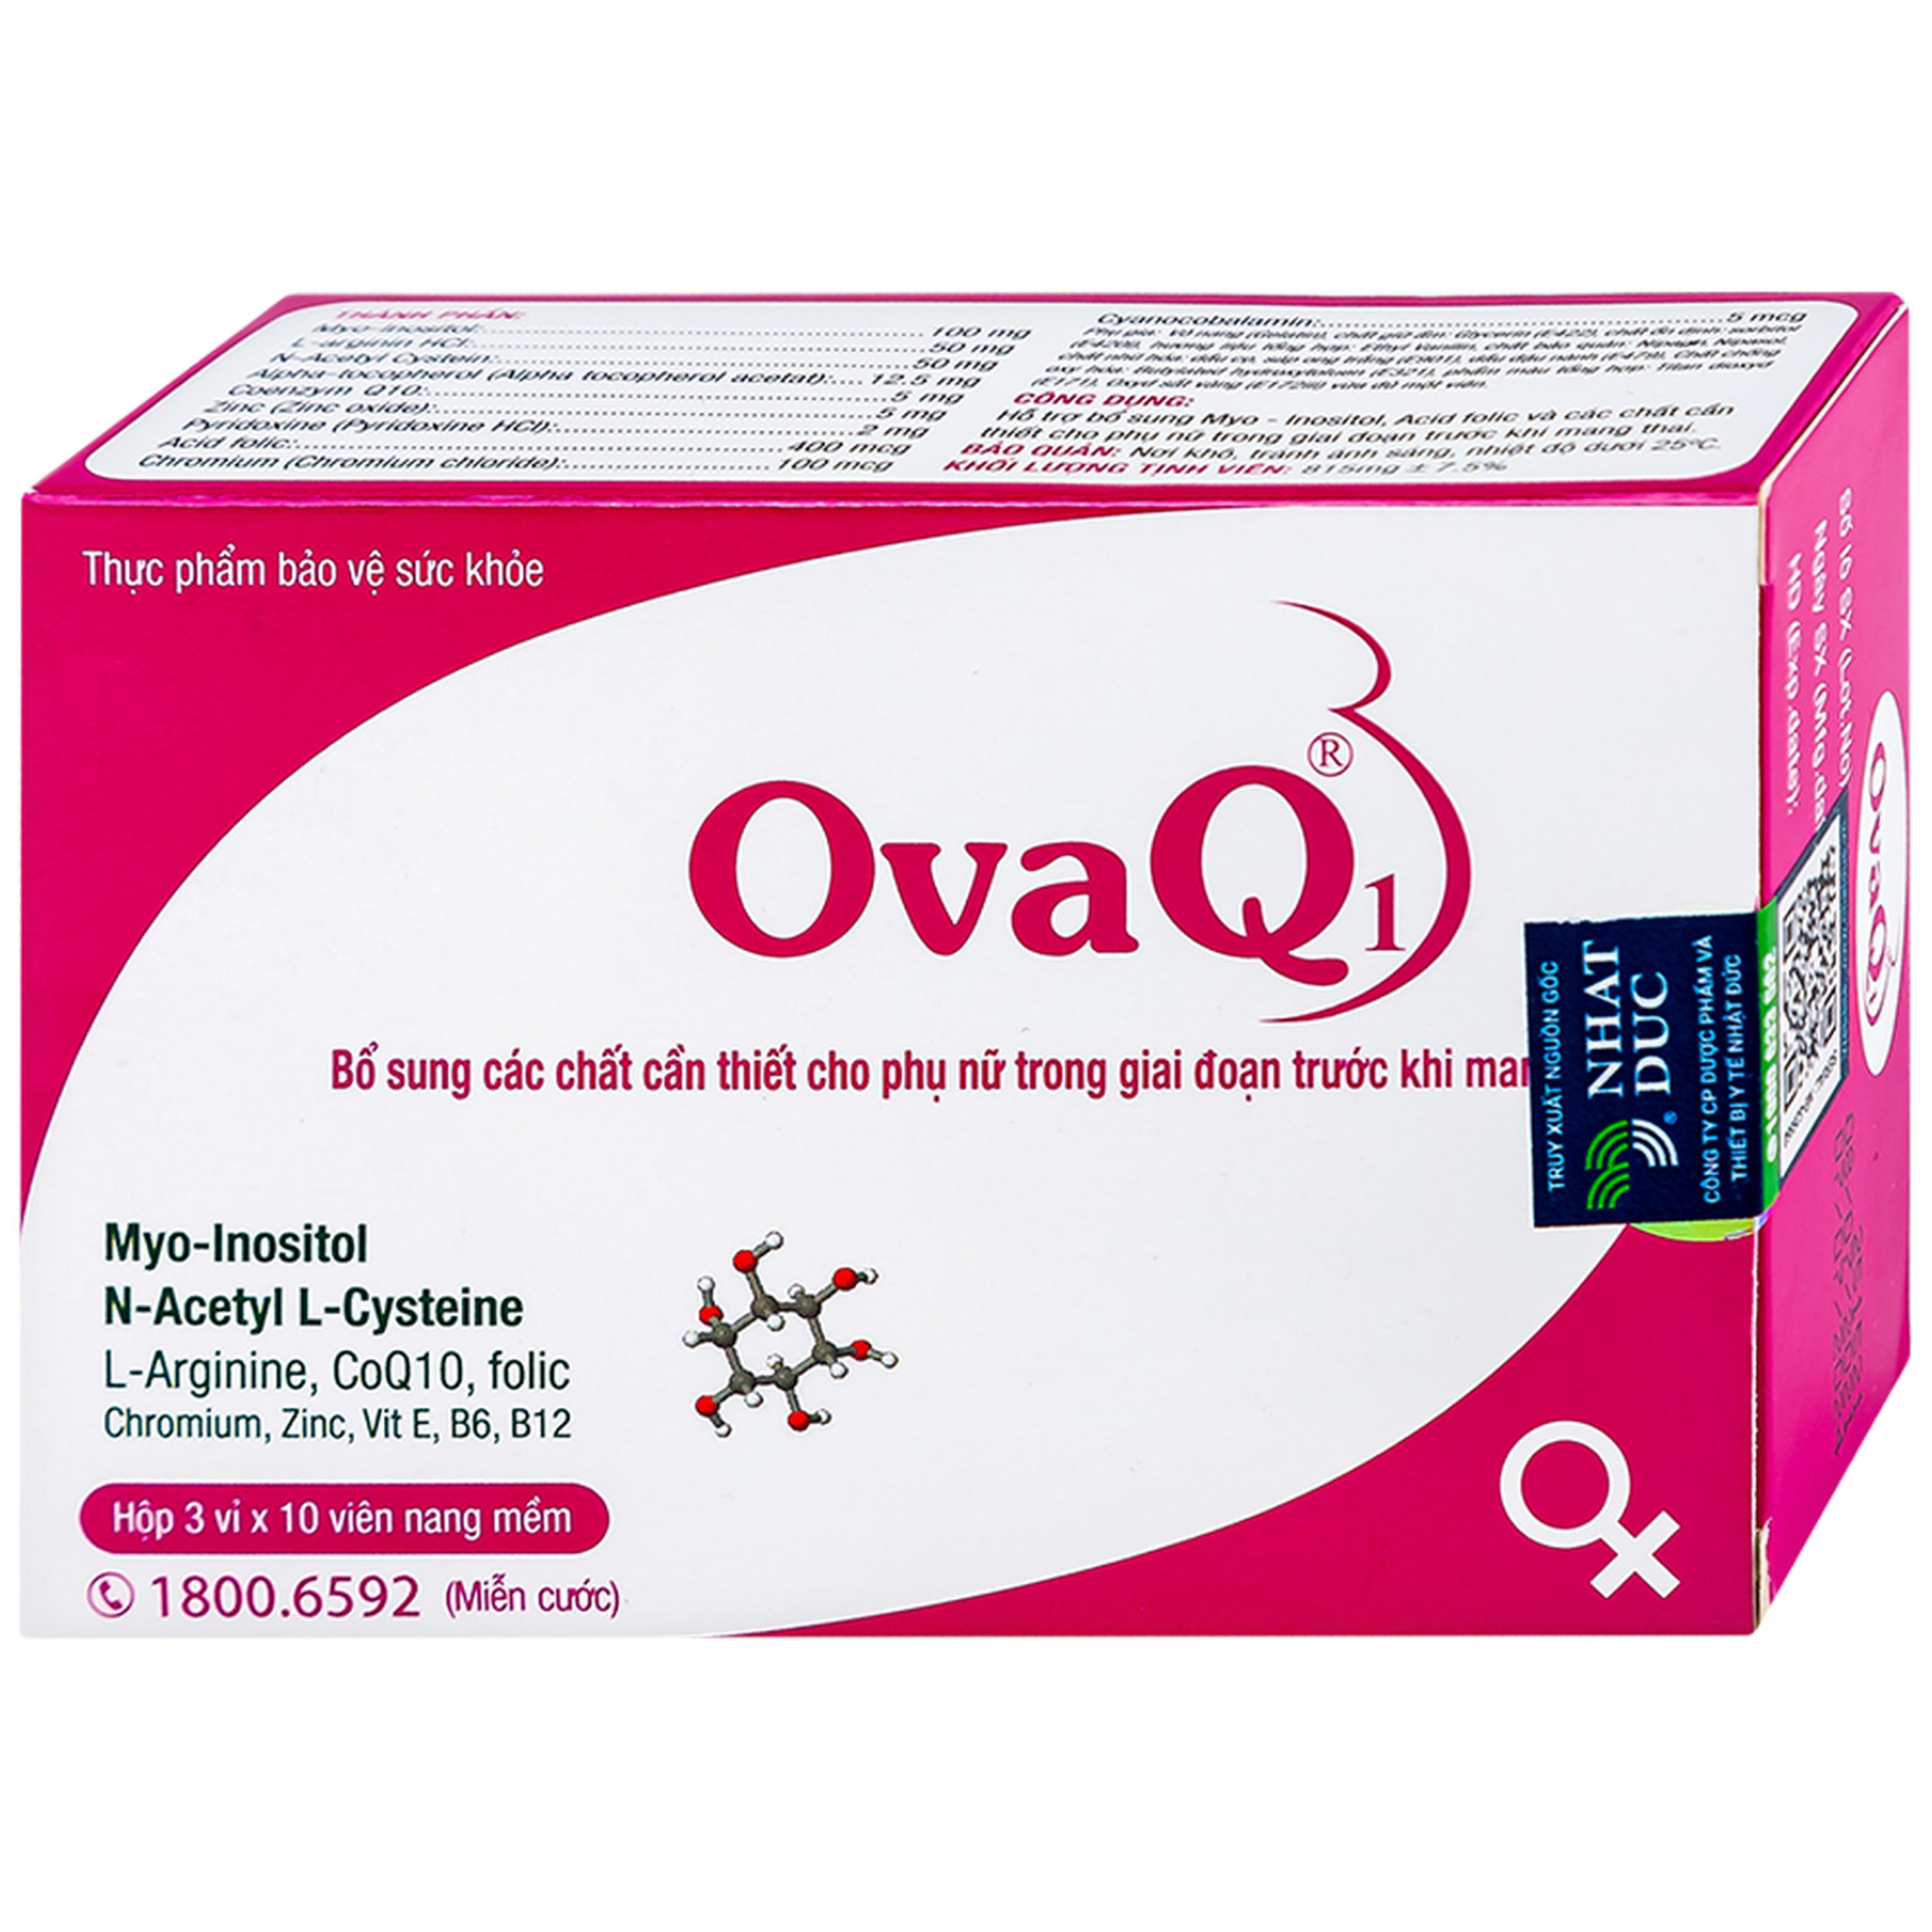 Viên uống OvaQ1 hỗ trợ bổ sung Myo Inositol, Acid folic và các chất cần thiết cho phụ nữ trước khi mang thai (3 vỉ x 10 viên)